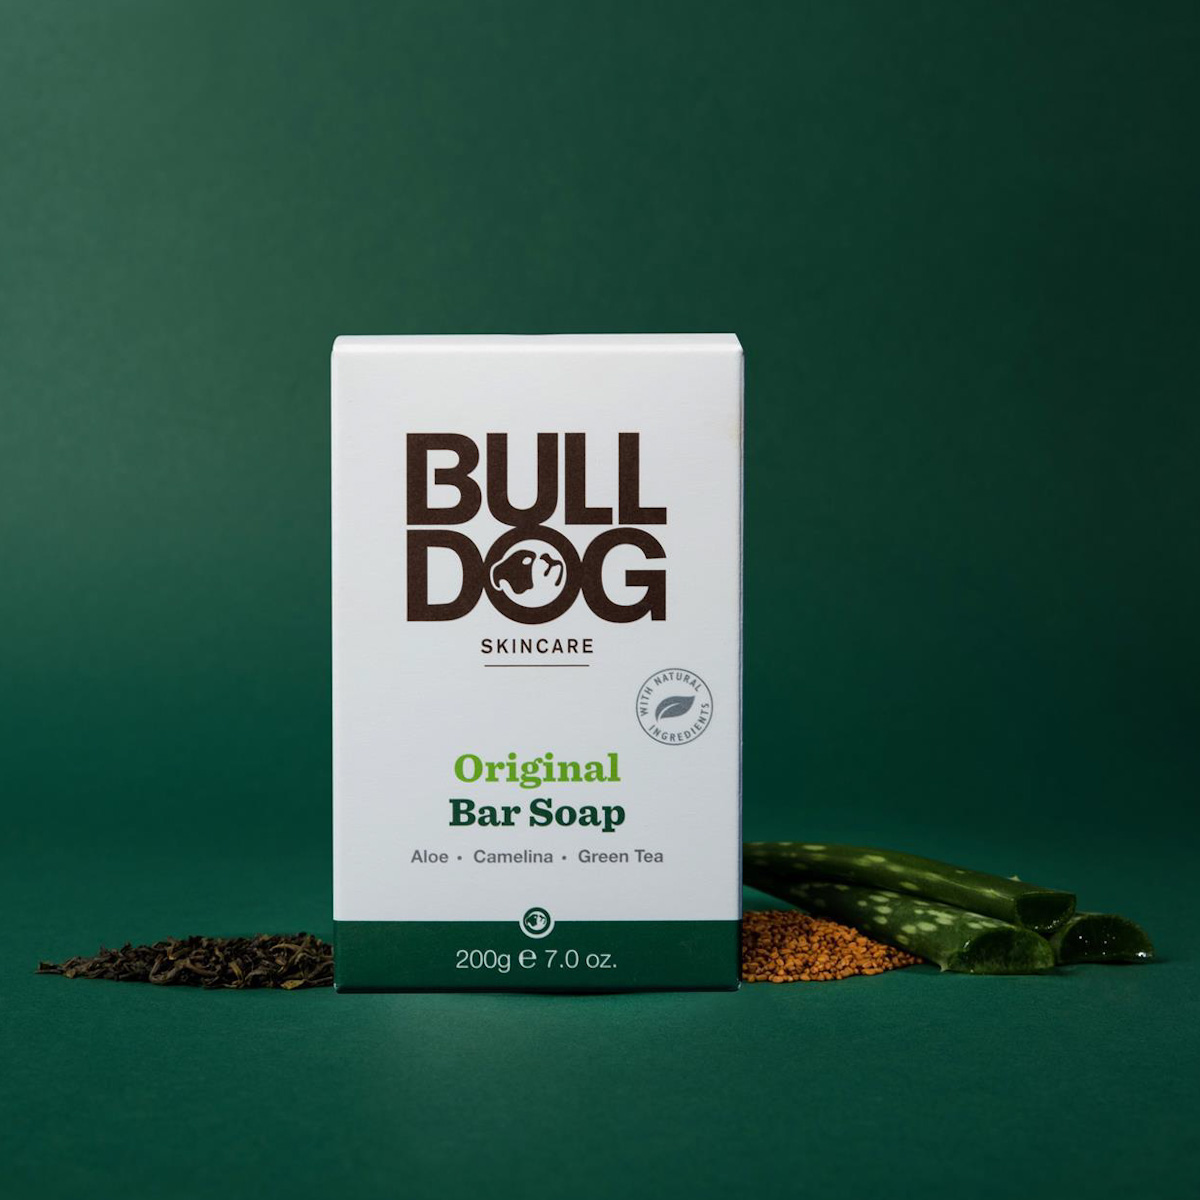 bulldog-skincare-bar-soap-original-payday-pickups-man-for-himself